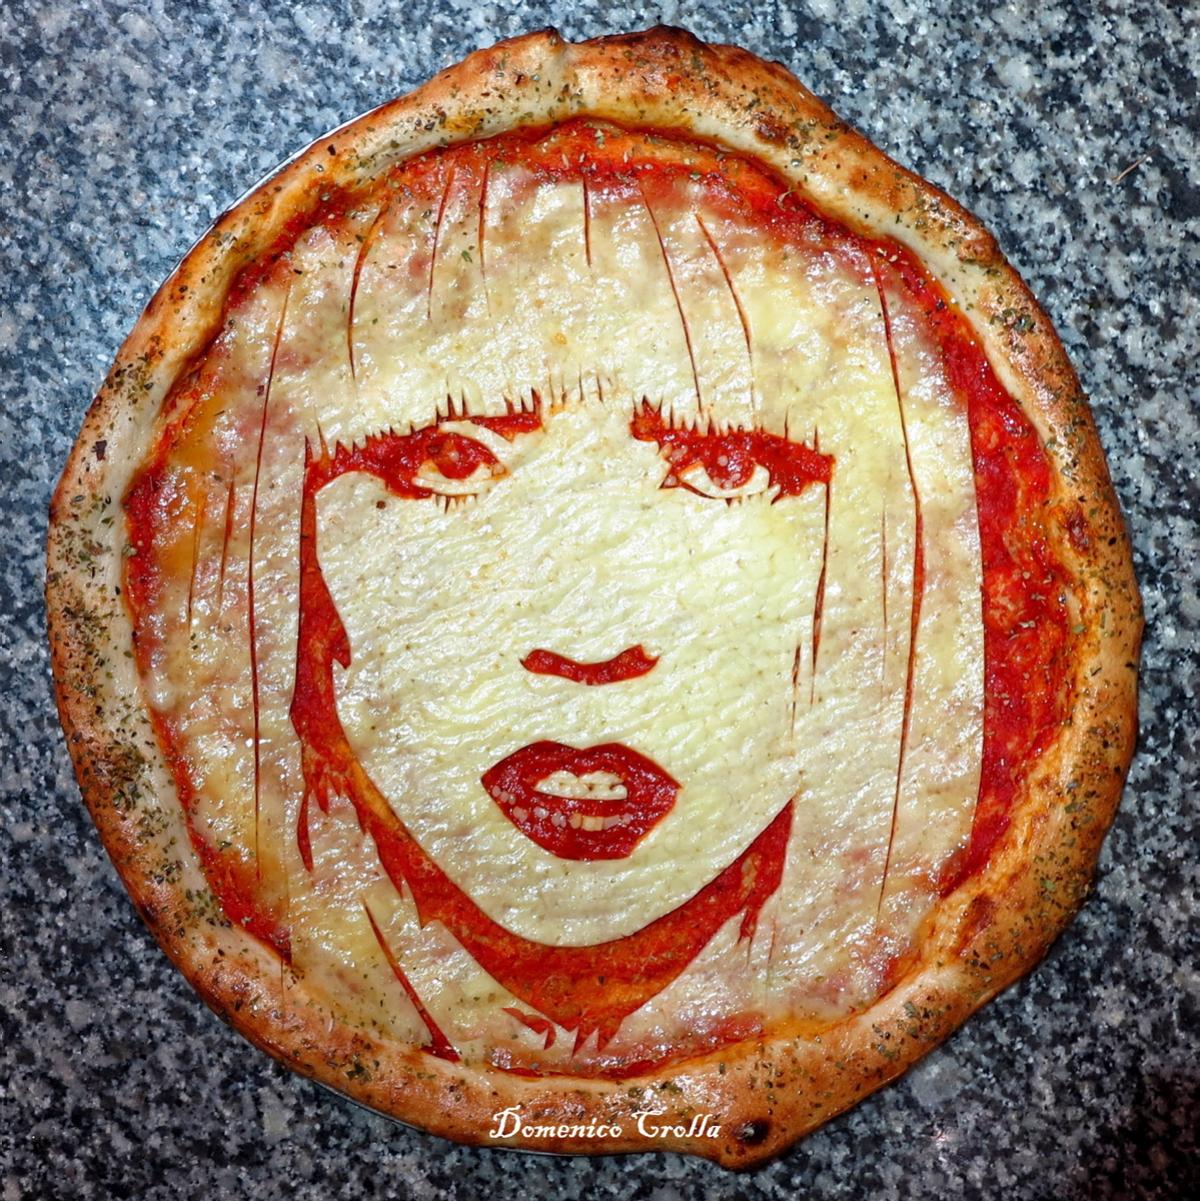 chef conquista instagram con retratos en pizzas lady gaga pizza portrait